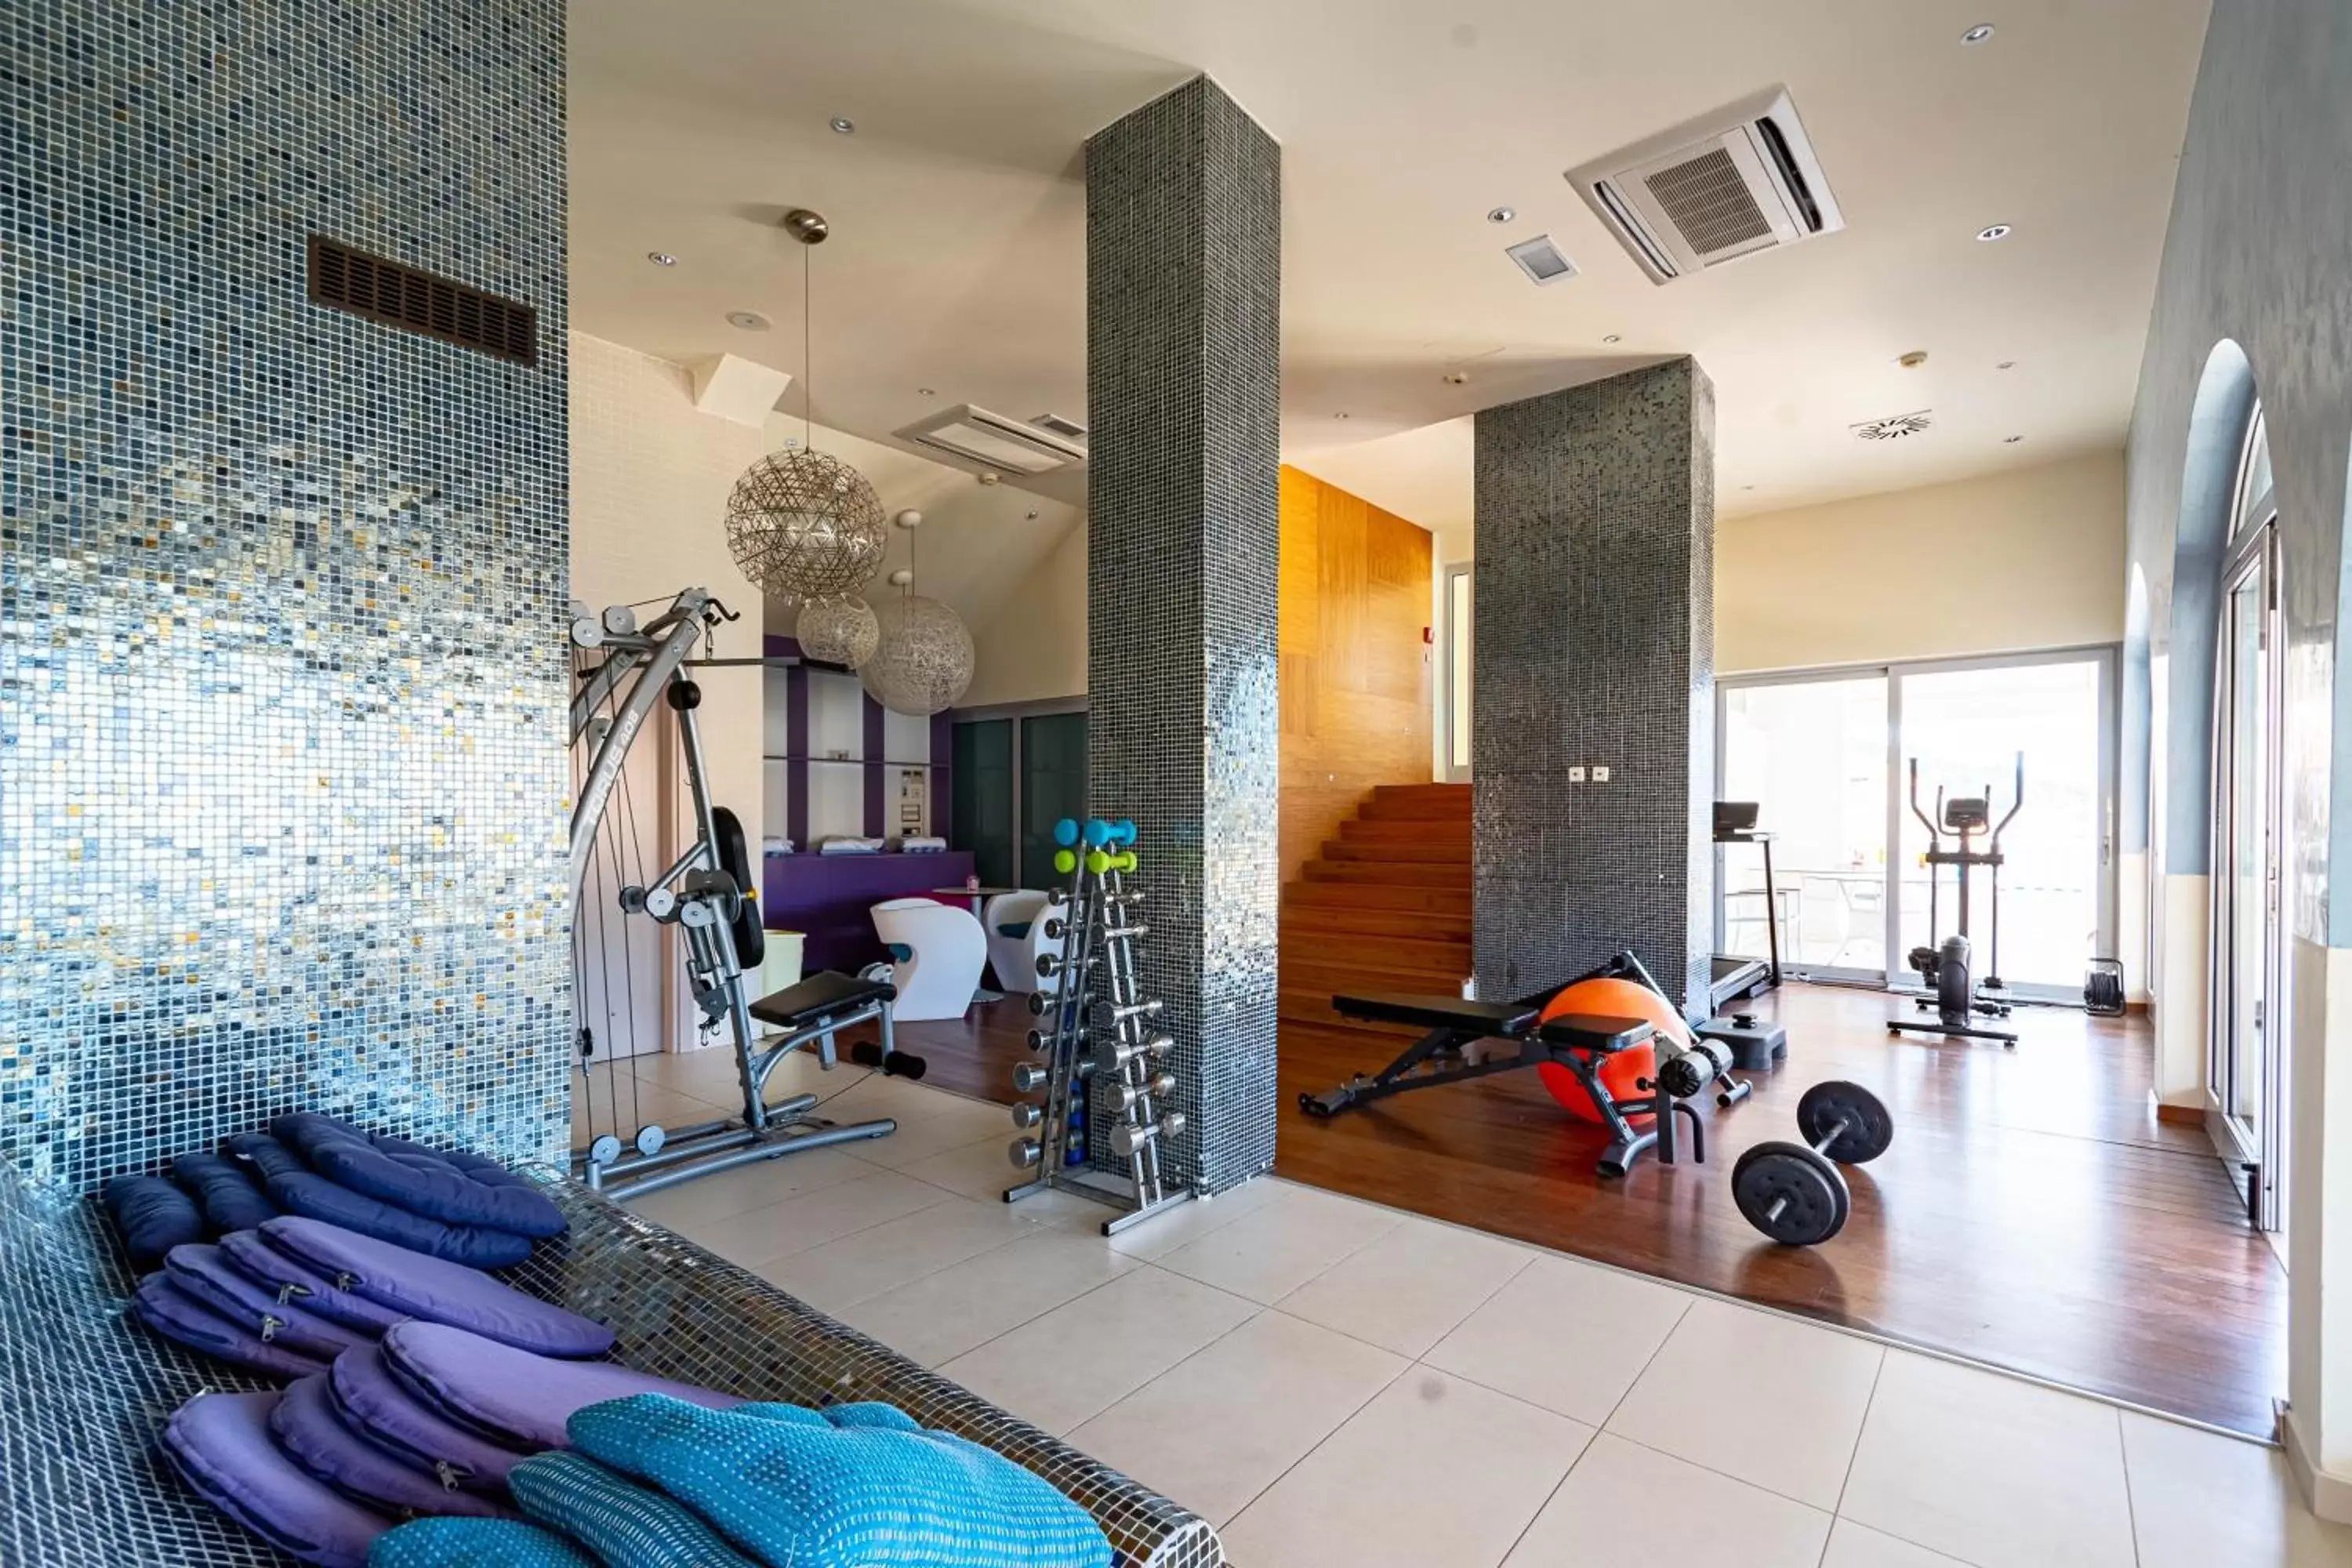 Fitness centre/facilities in Hotel Korkyra